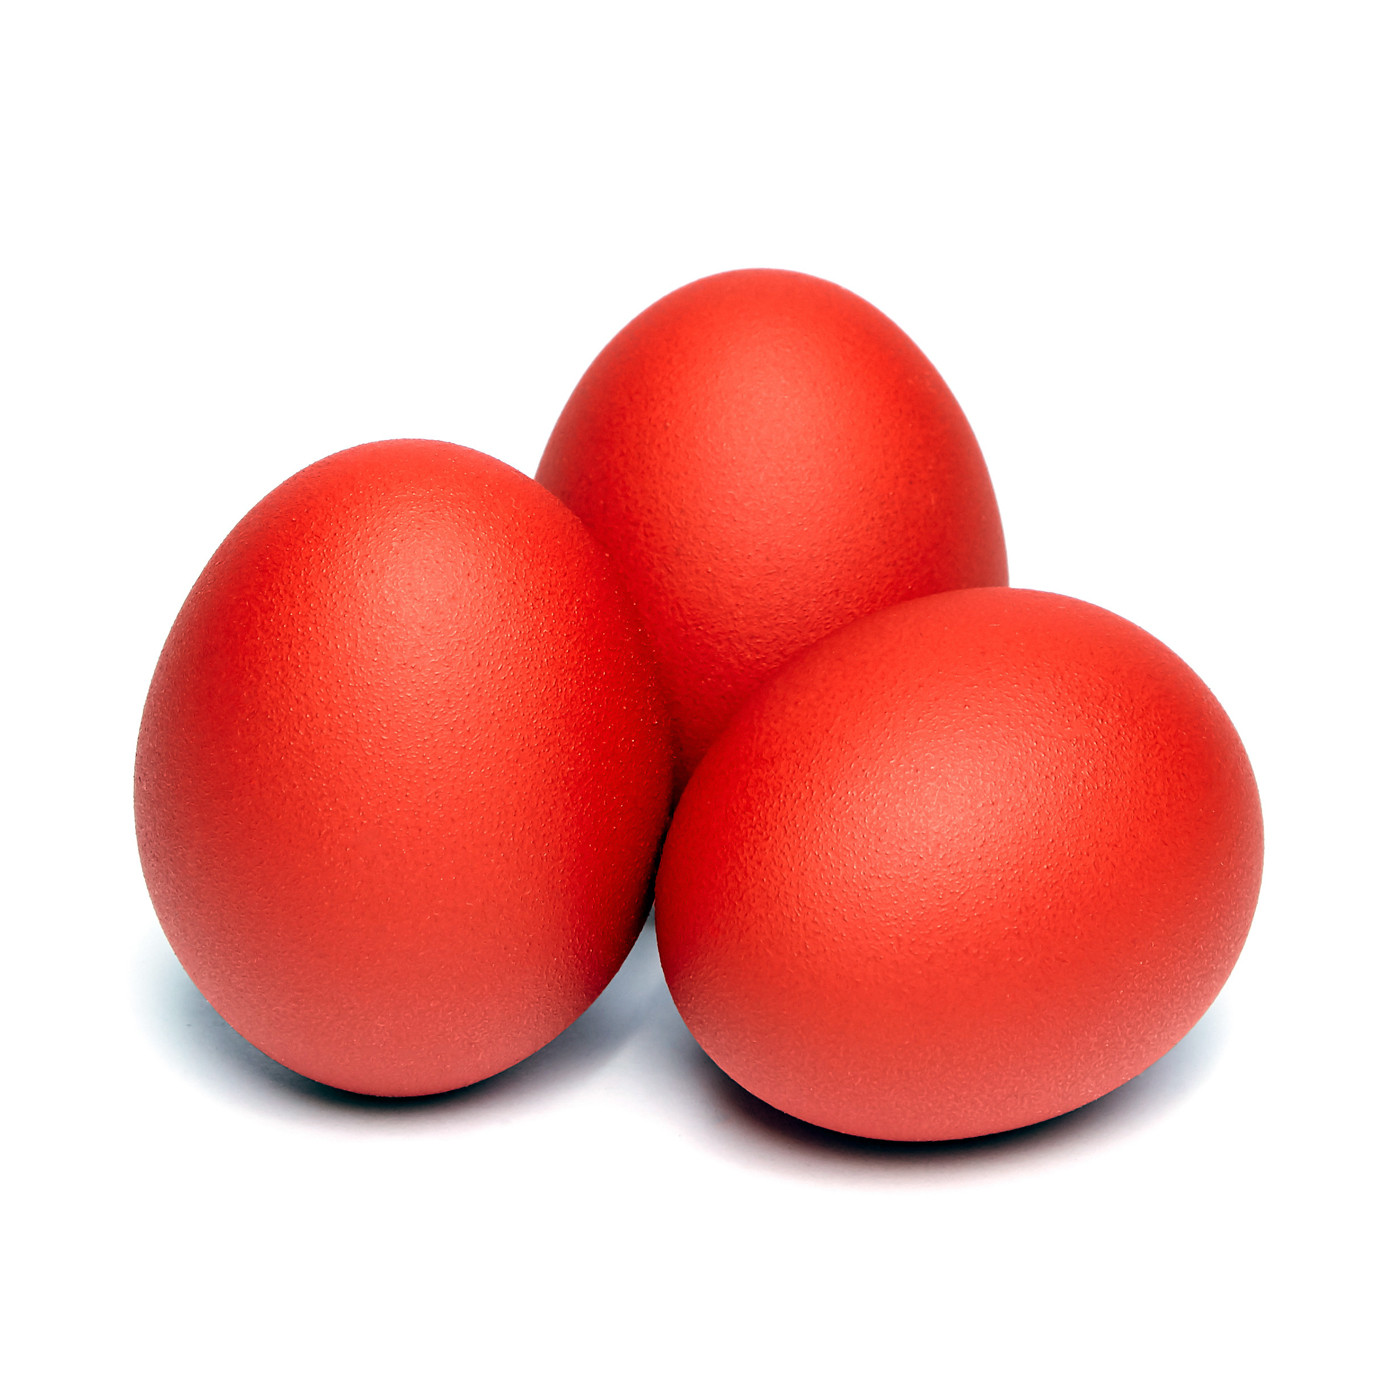 Βαμμένα κόκκινα αυγά ελευθέρας  βοσκής Βαρνάβα